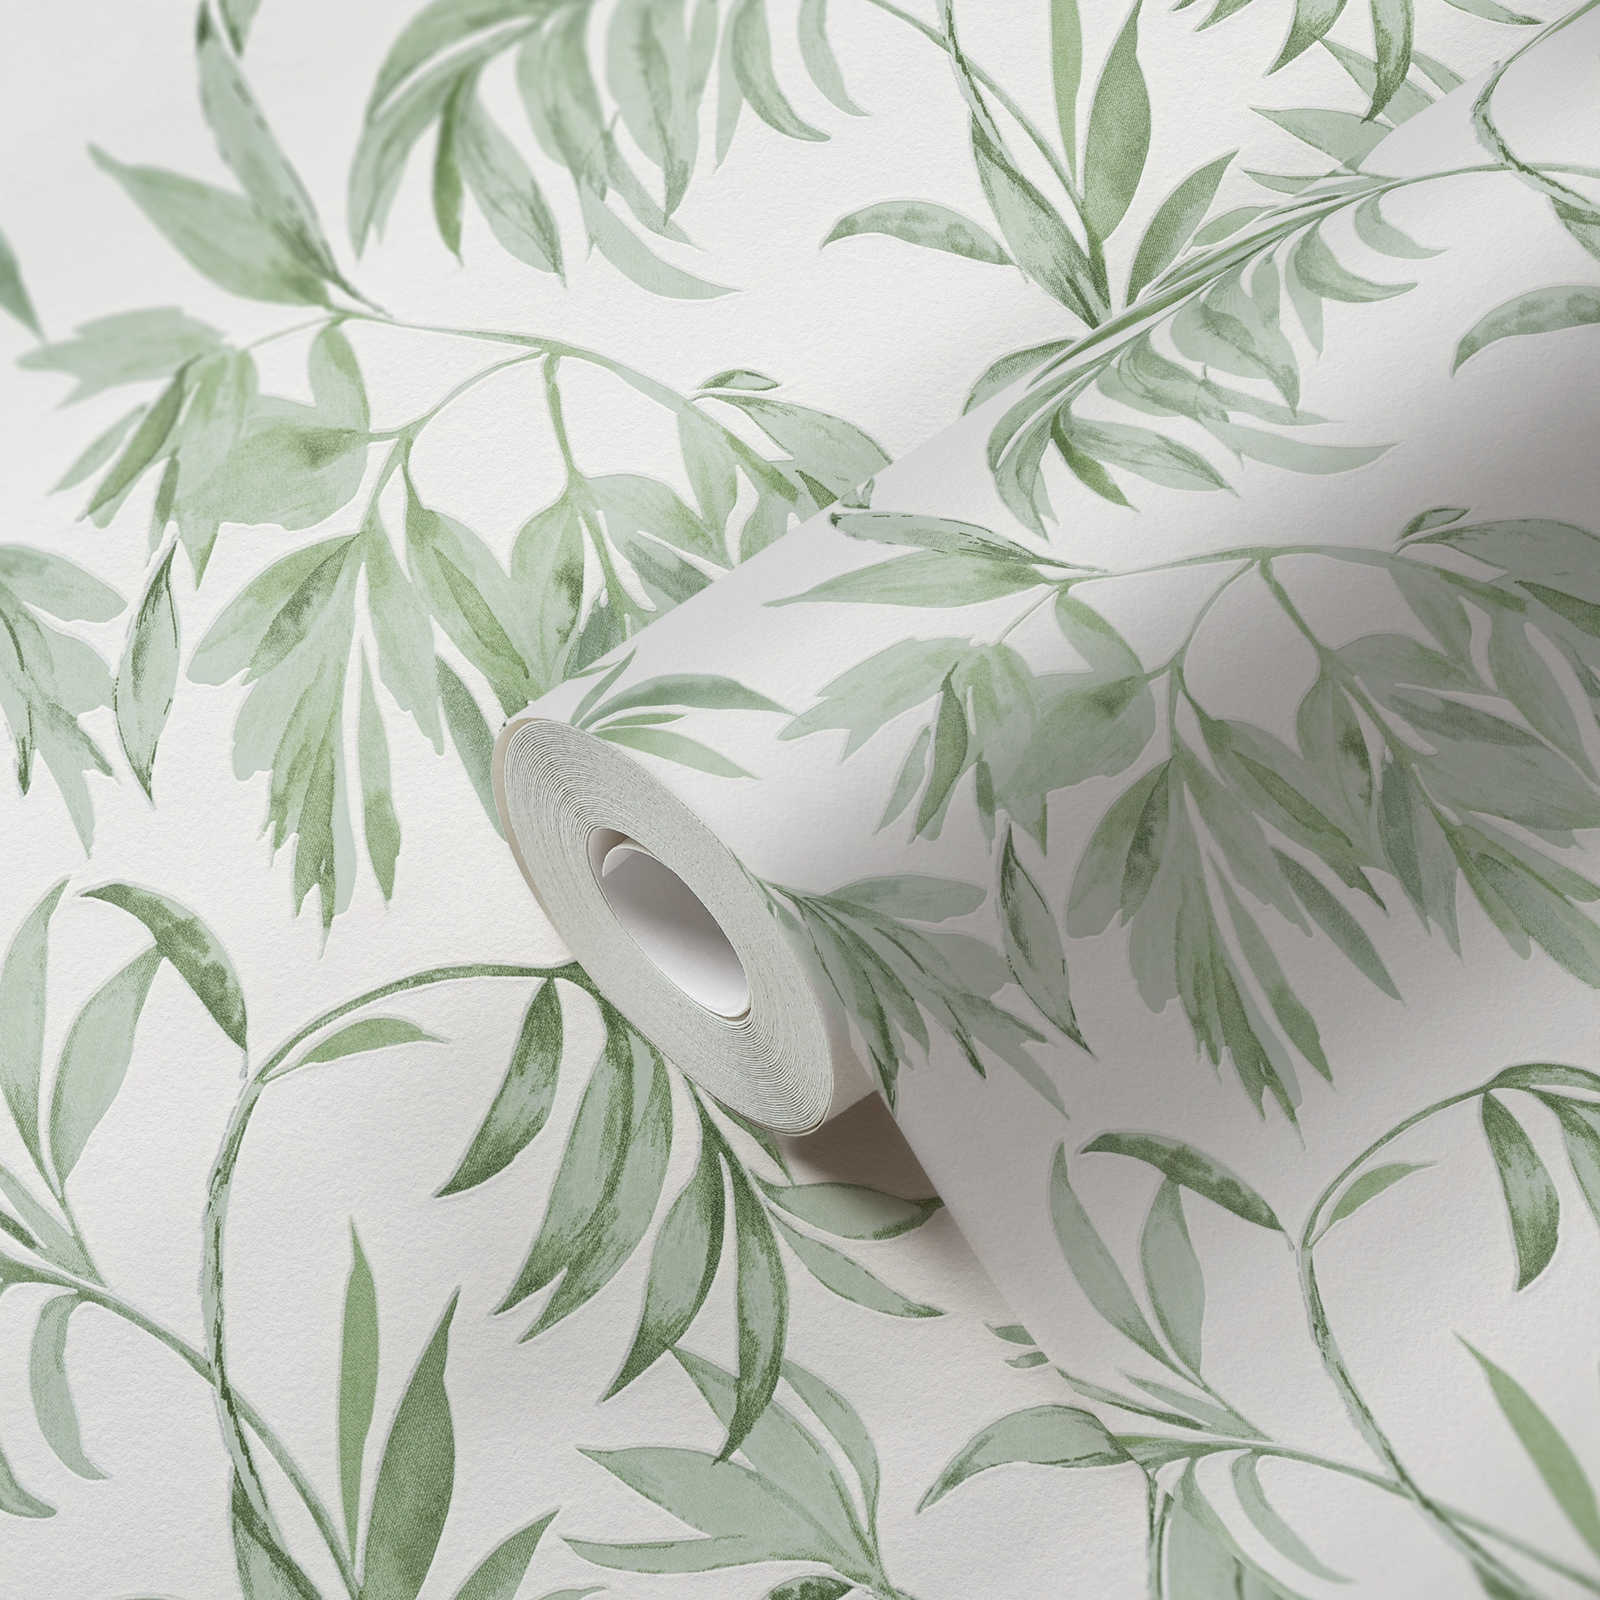             Aquarel stijl bladranken behang - groen, wit
        